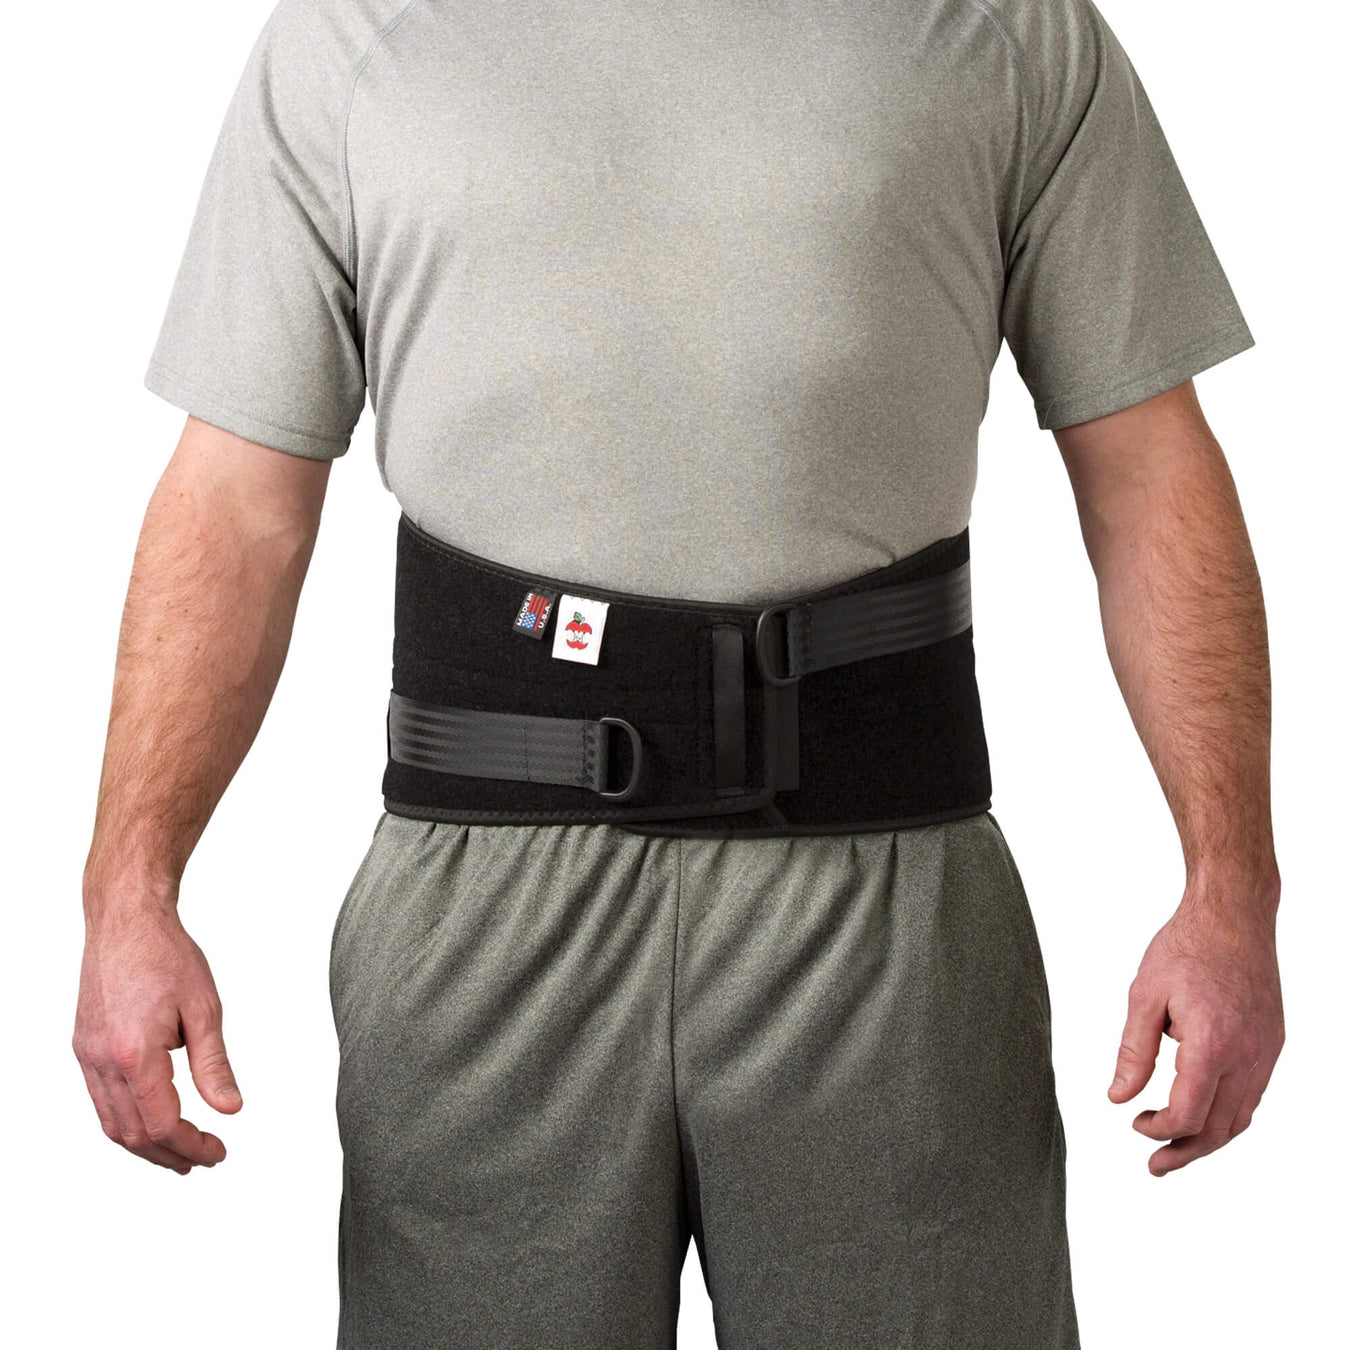 Buy KTM Healthcare Pack of 1 Ortopedico Postural Back Brace Corset Back  Support Brace Band Belt Orthopedic VPosture Corrector Back Belt For Health  Care - (Size: XL) & Color: White Online at